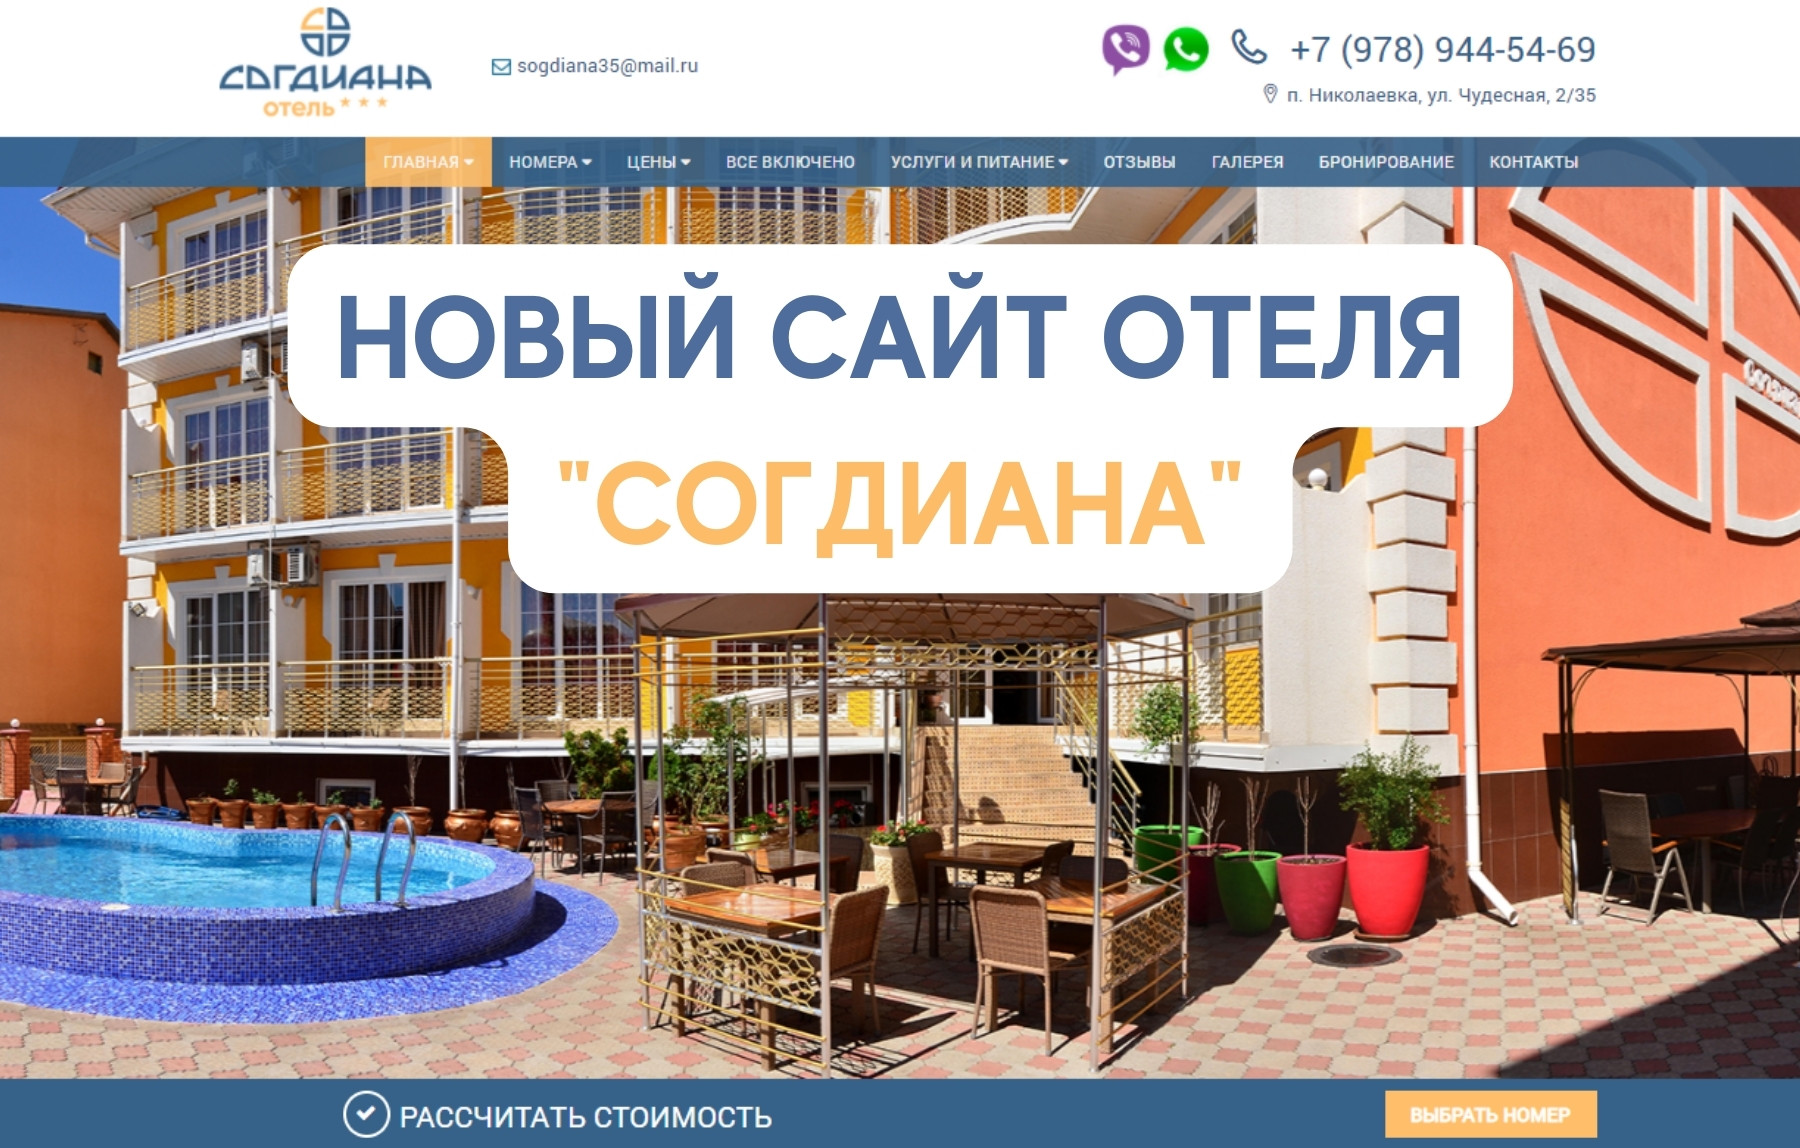 Официальный сайт отеля Согдиана в Николаевке фото 